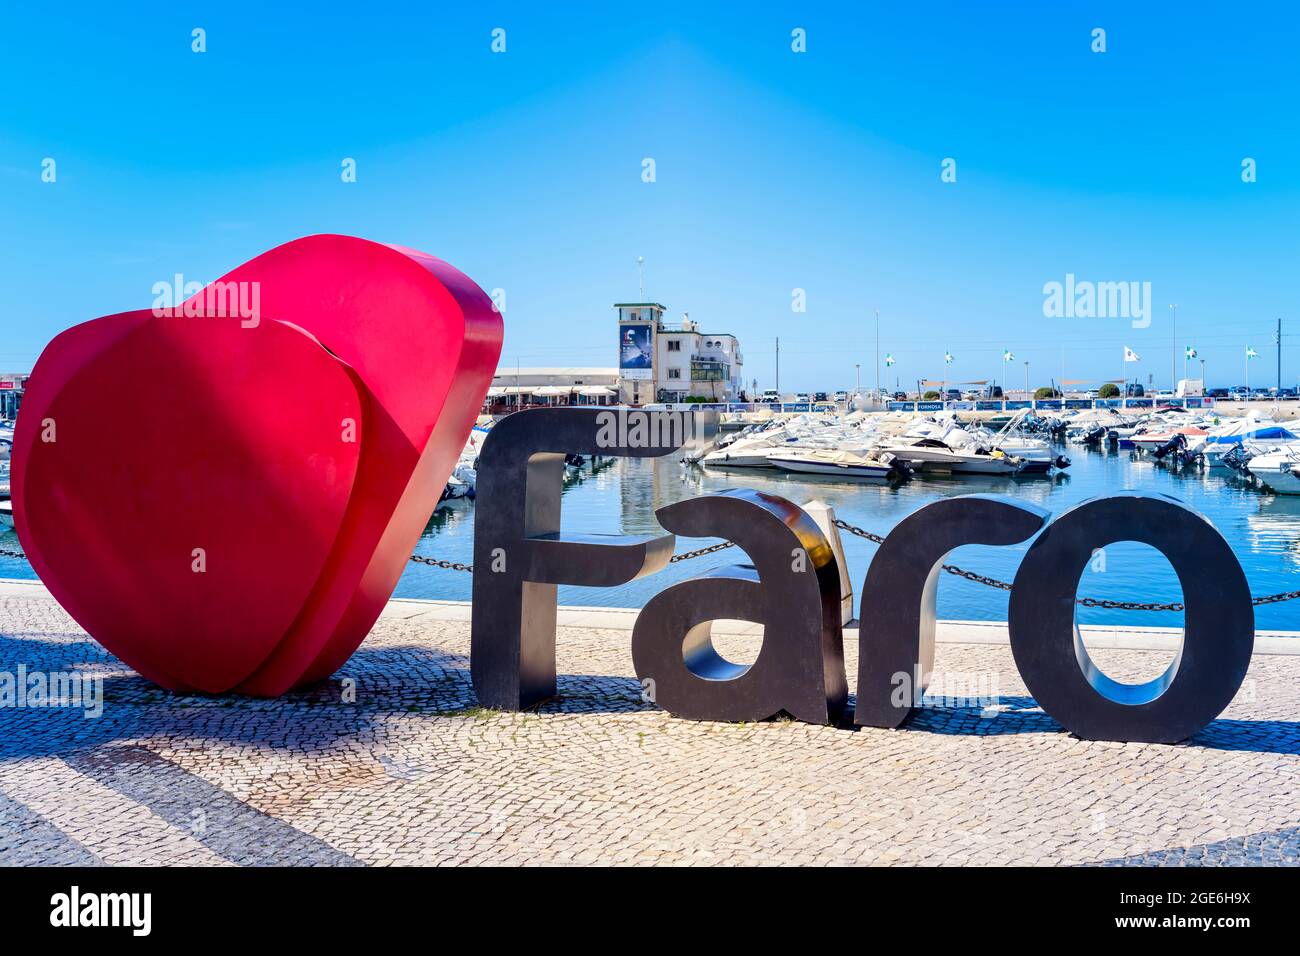 Faro-Namensschild-Logo vor dem Yachthafen von Faro. Touristen lieben es, mit diesem Schild fotografiert zu werden. Faro Algarve Portugal Stockfoto